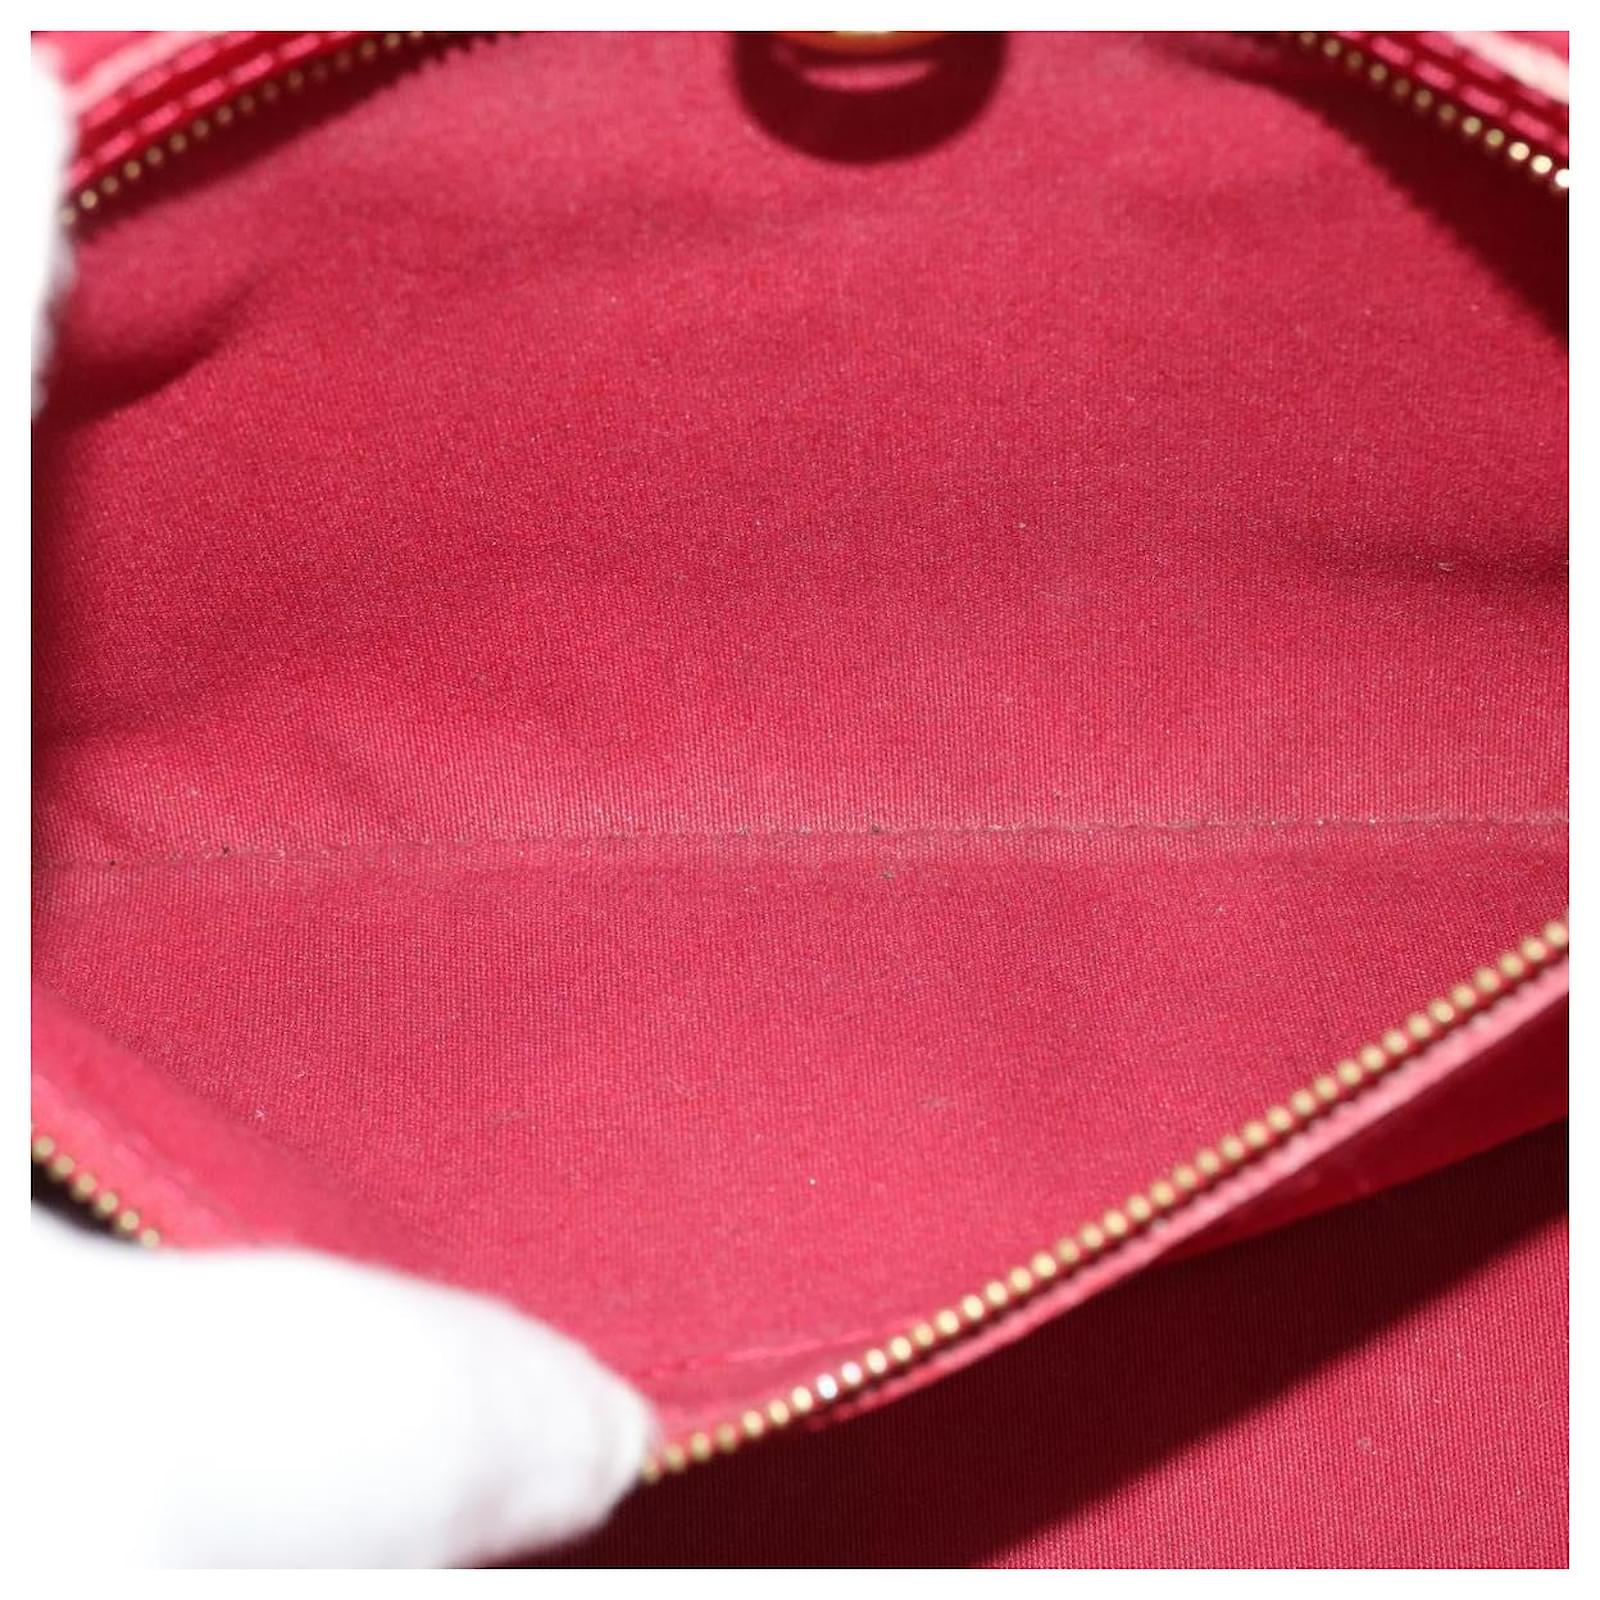 Auth Louis Vuitton Monogram Vernis Wilshire PM M93642 Handbag Pomme D'amour